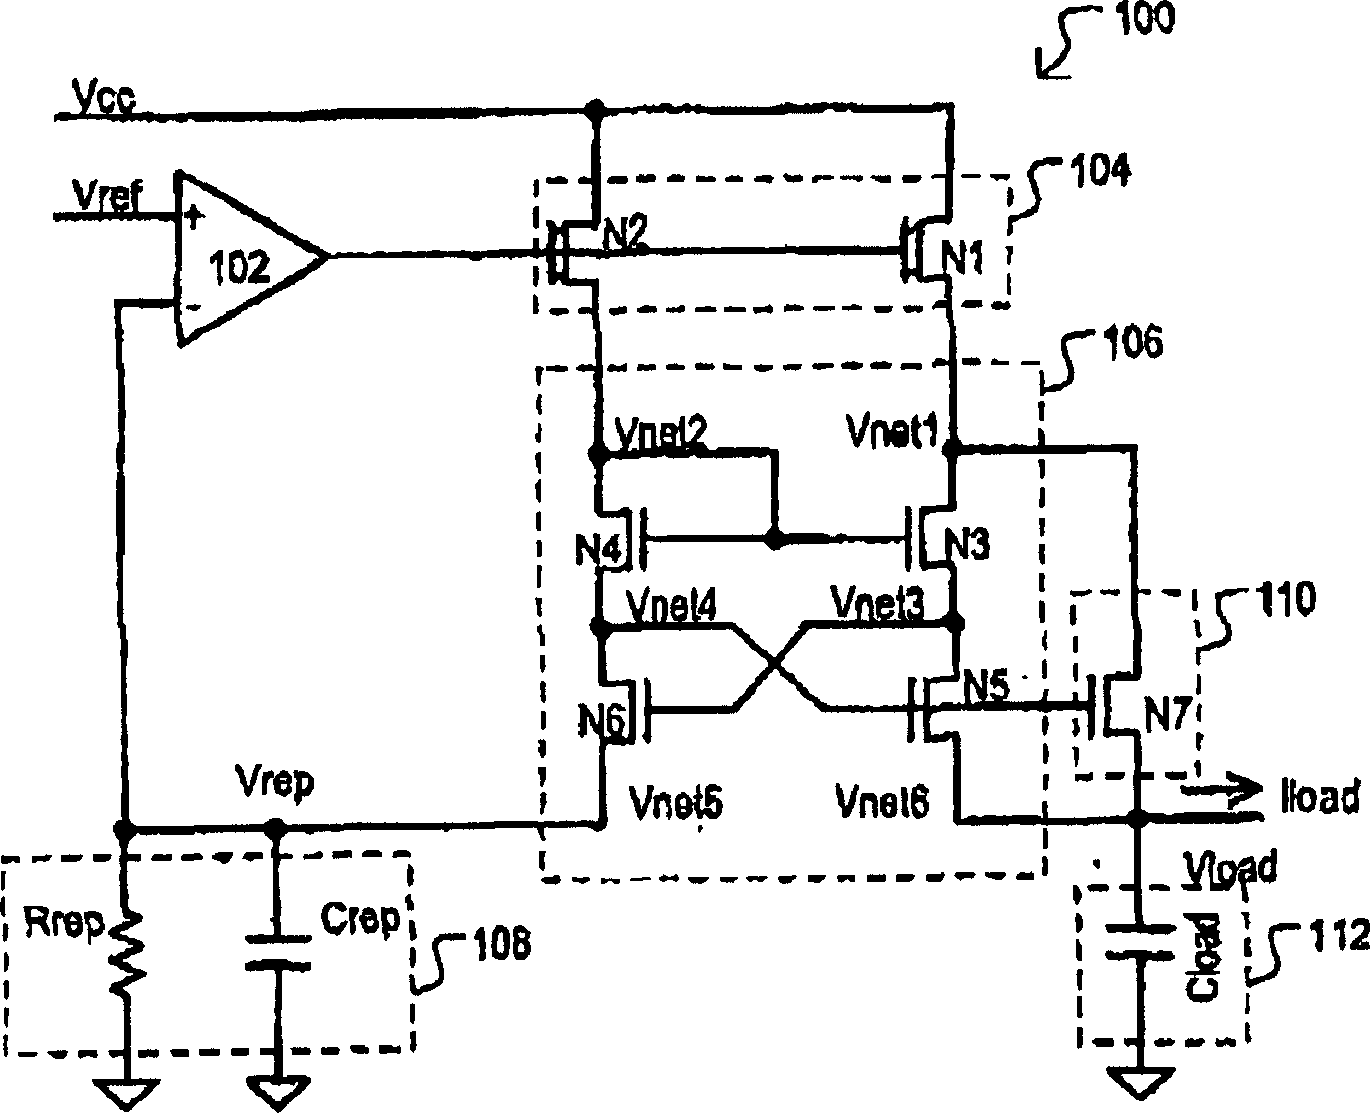 Replica biased voltage regulator